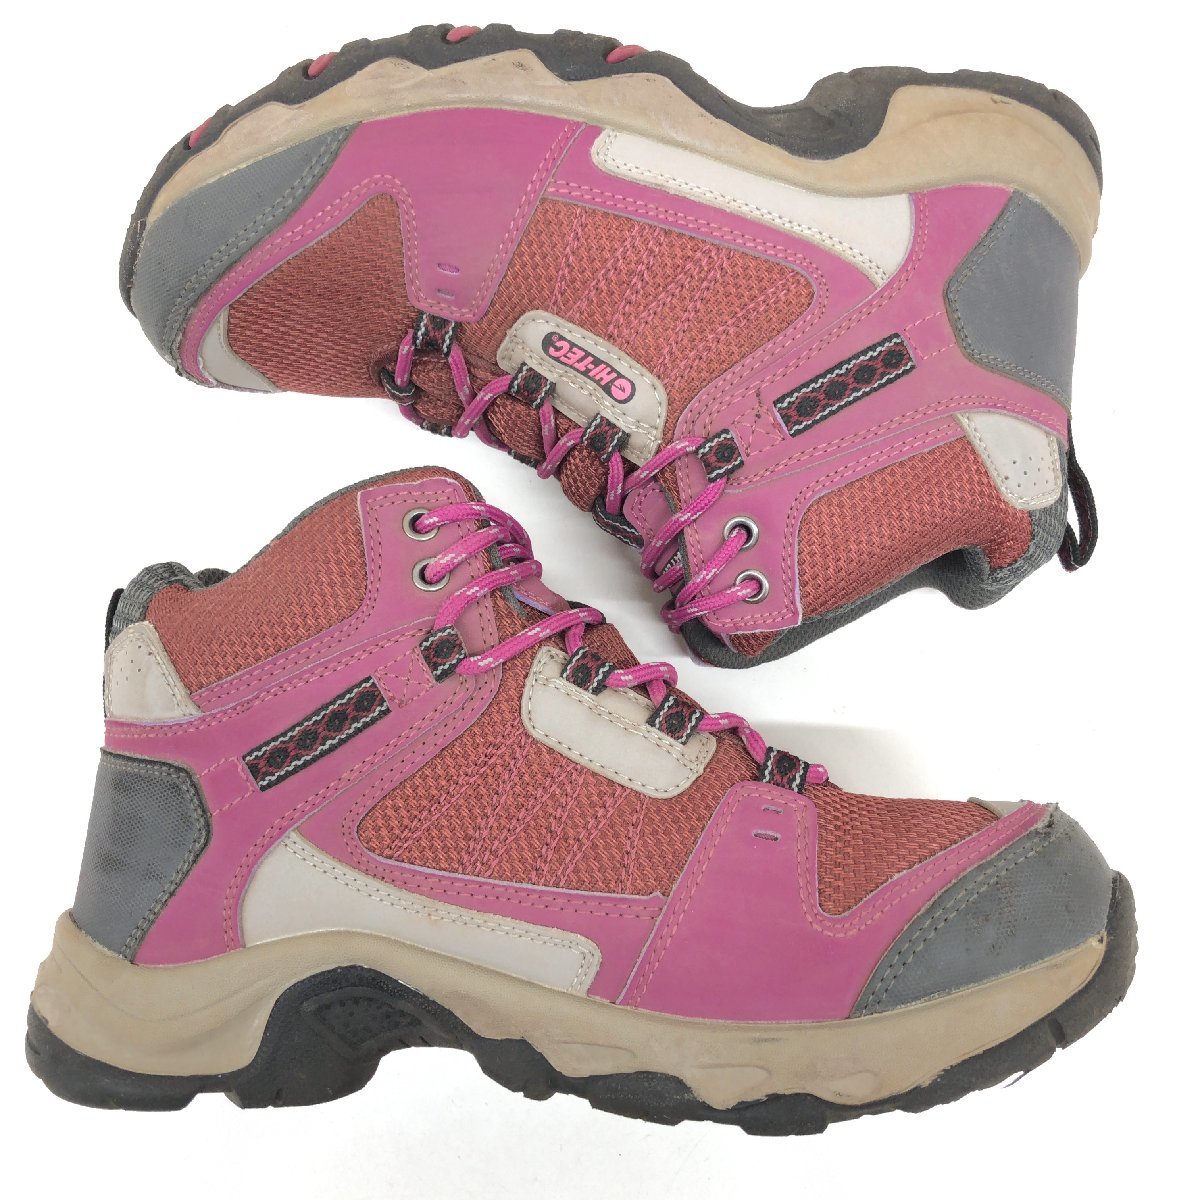 ●HI-TEC ハイテック ウォータープルーフ トレッキングシューズ 22.5cm ピンク系 アウトドアシューズ 登山靴 ハイキング レディース 女性用の画像6